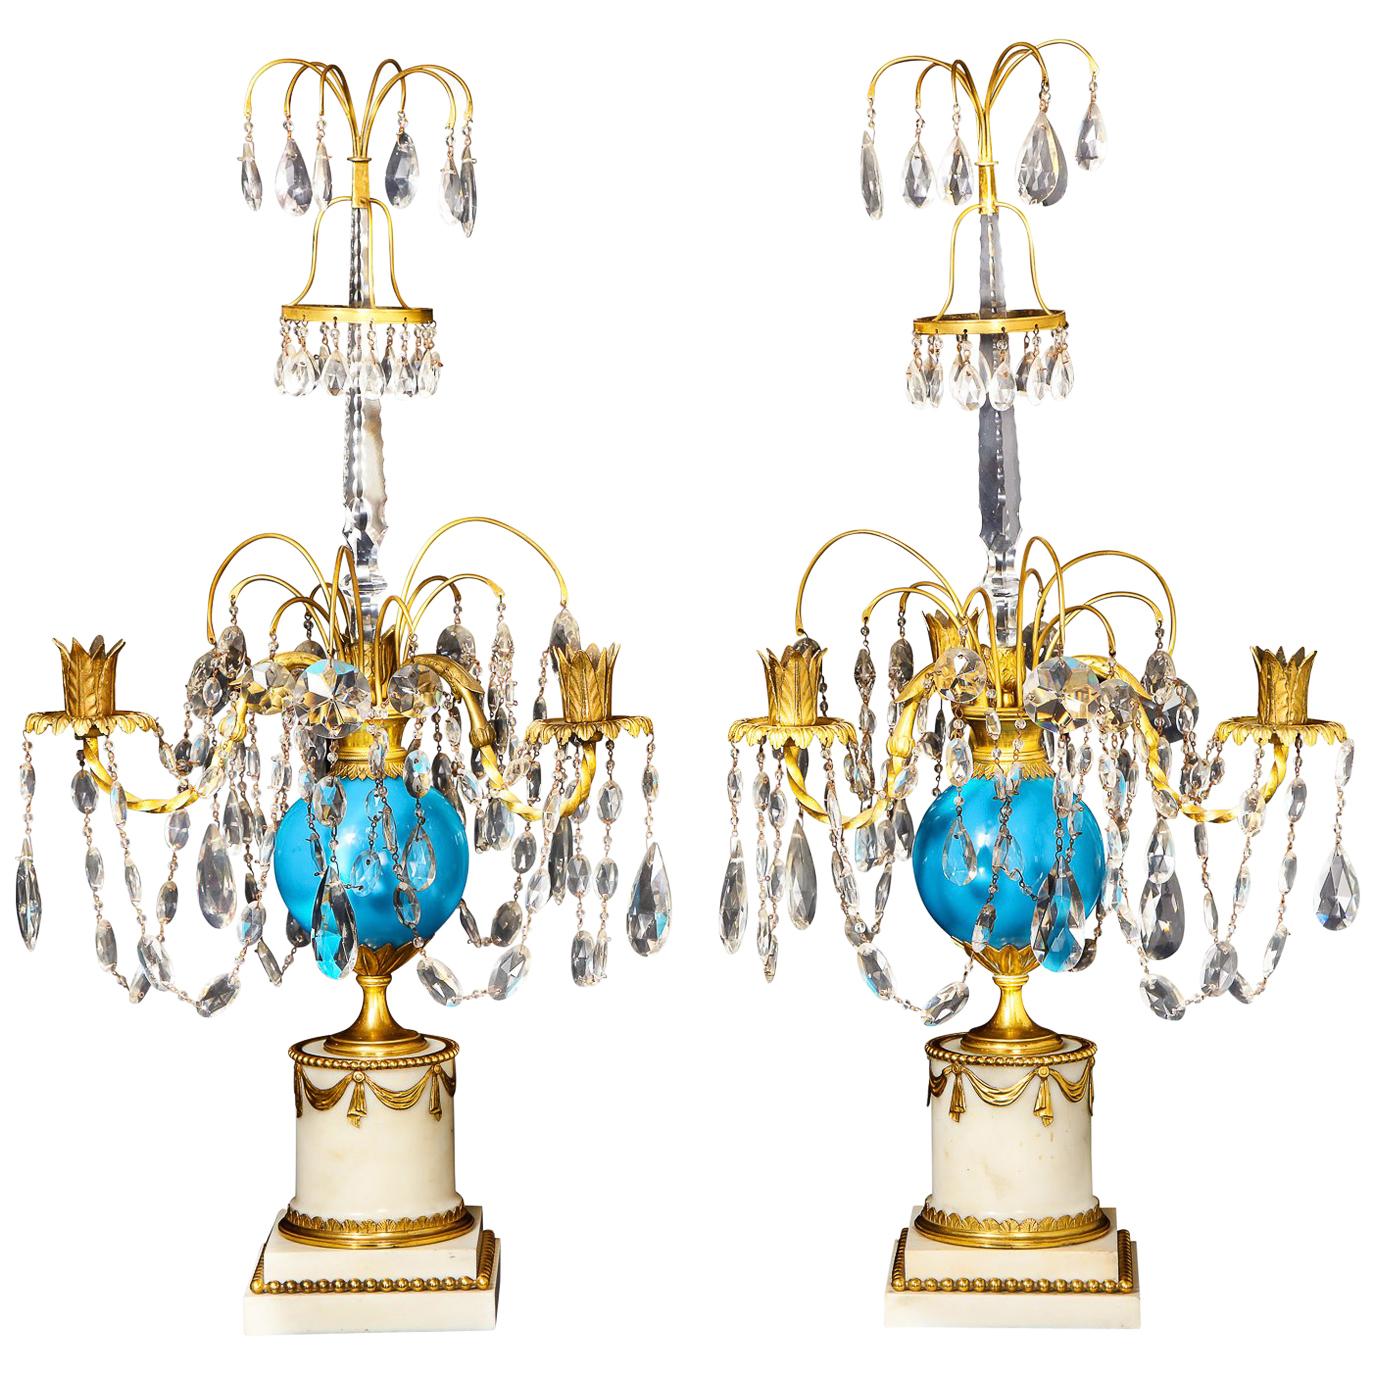 Paire de candélabres russes anciens de style néoclassique en bronze doré et verre opalin